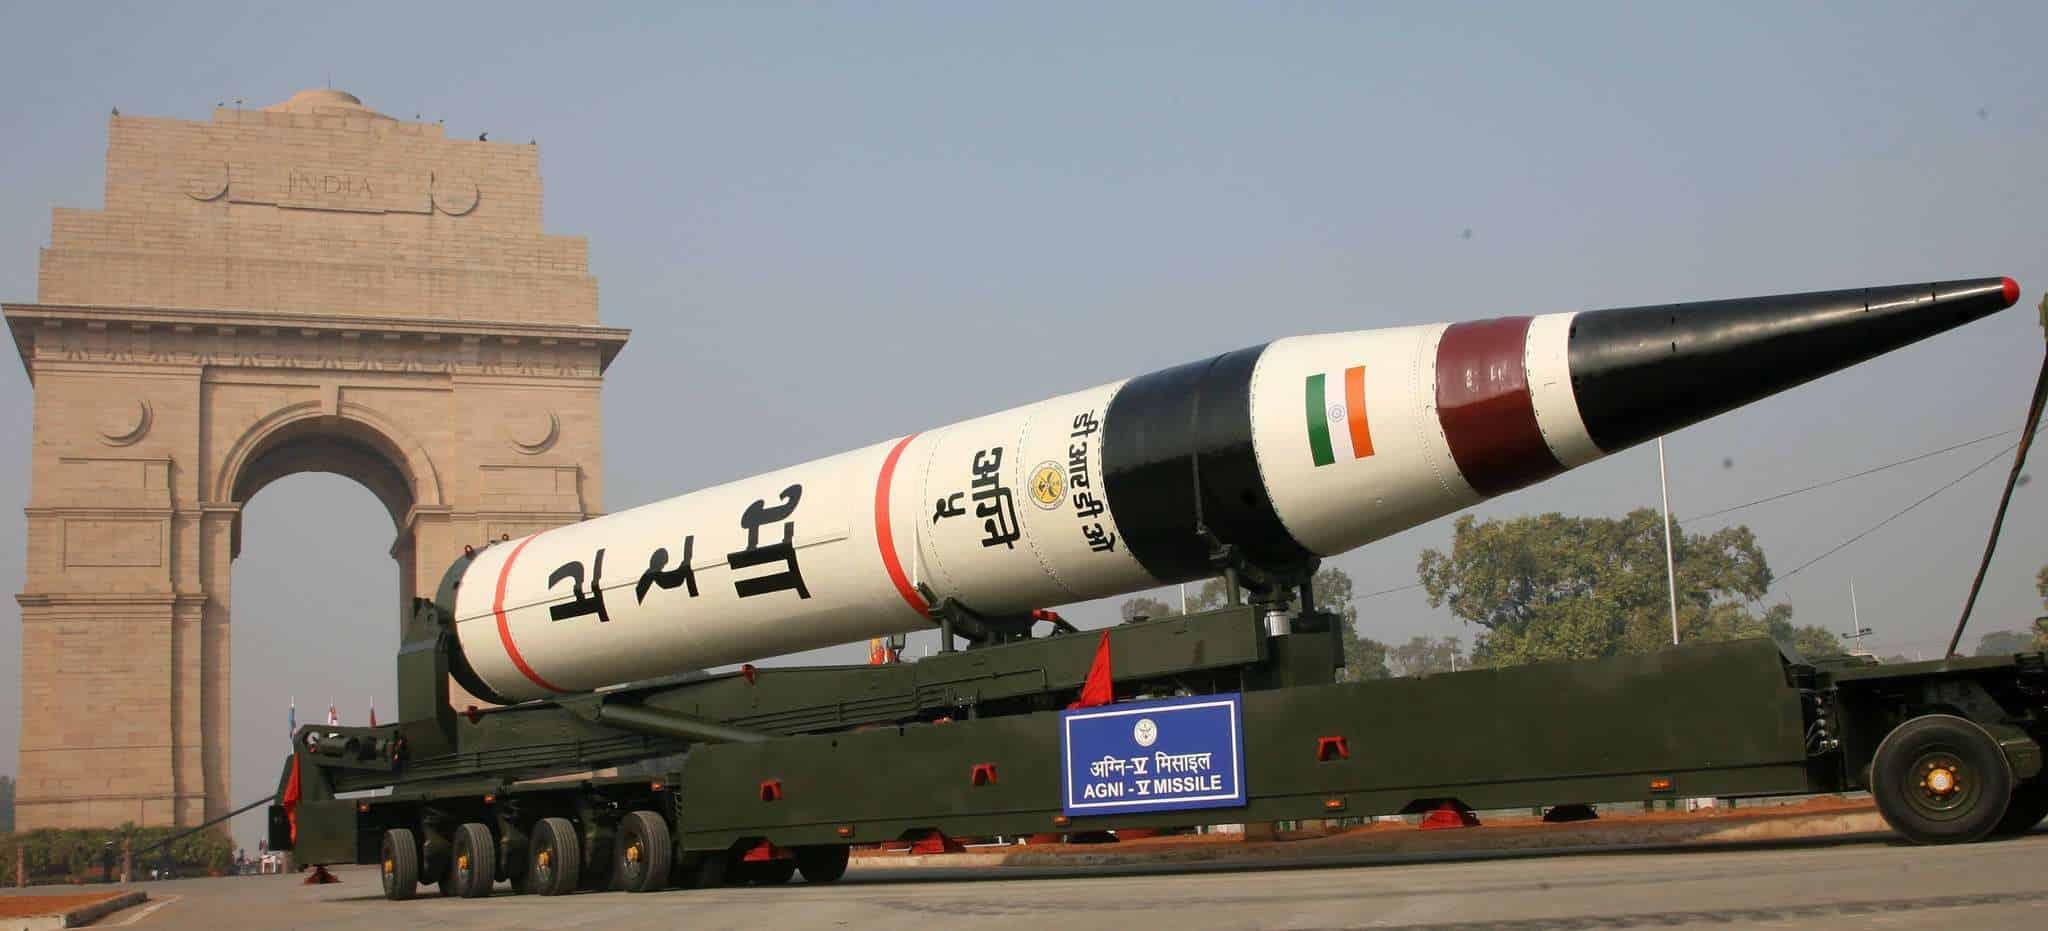 印度再次试射 这枚导弹可带核弹头,但想比肩中国还差得远 